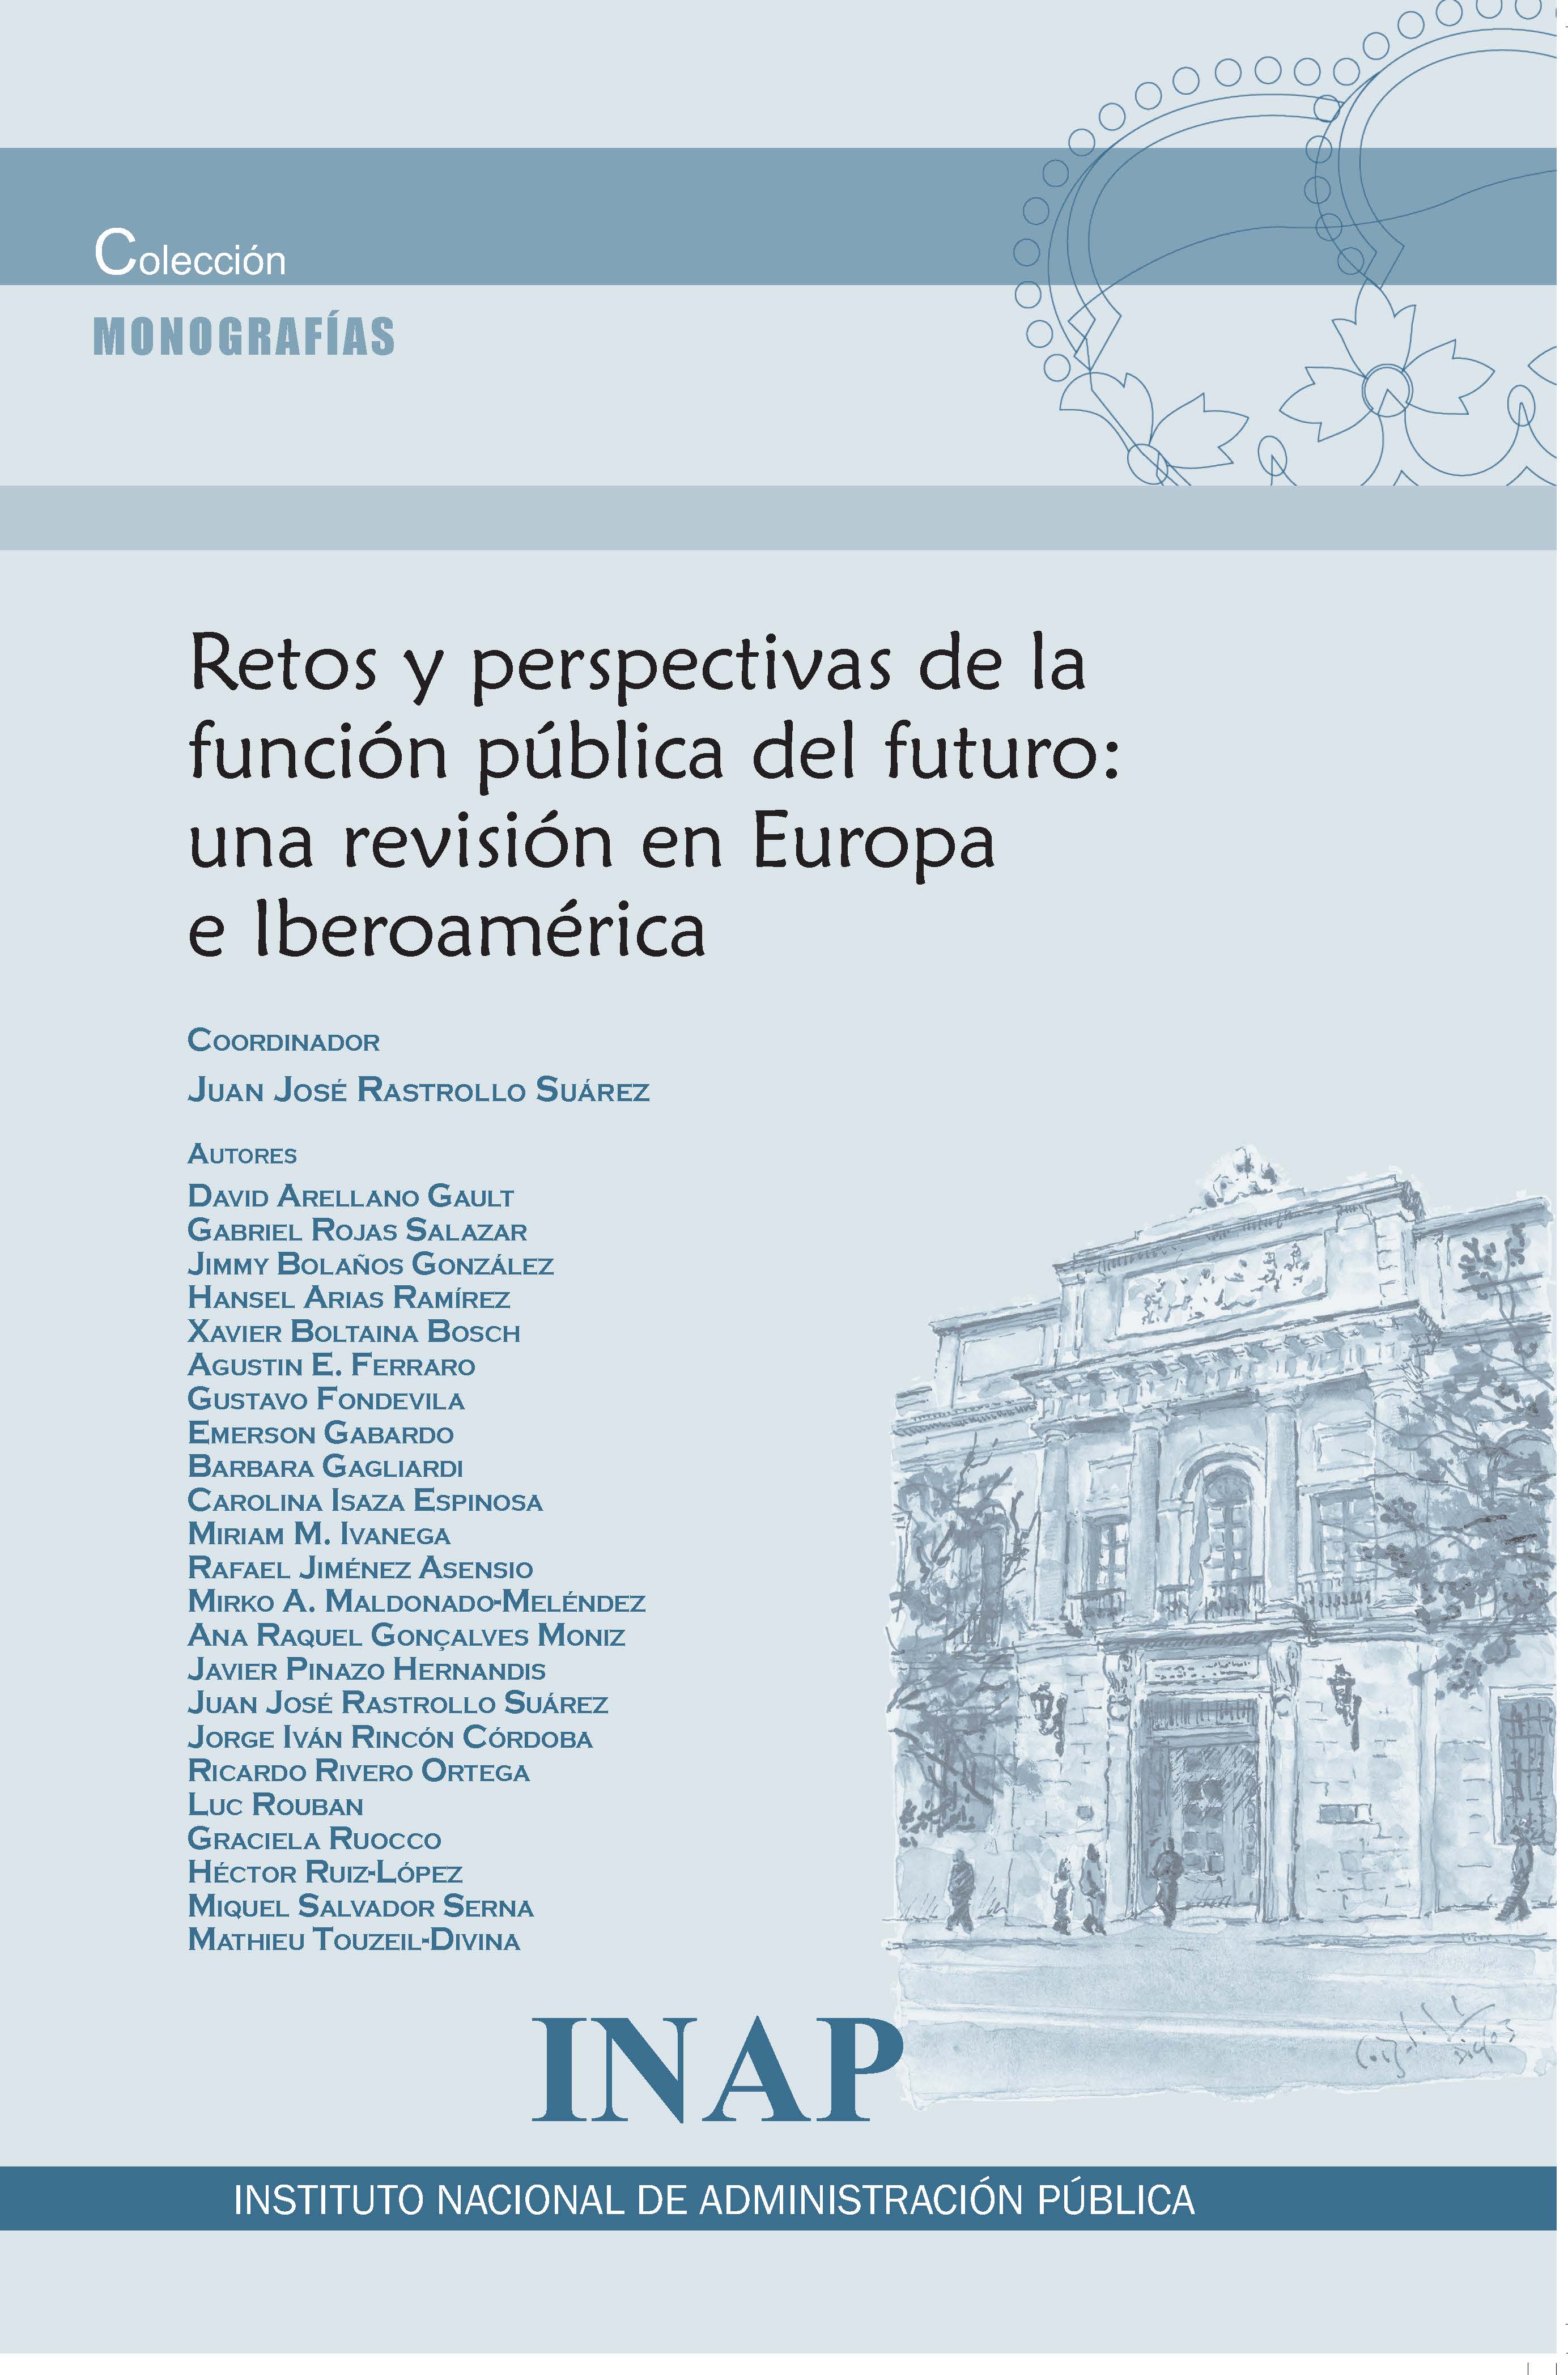 Retos y perspectivas de la función pública del futuro: una revisión en Europa e Iberoamérica